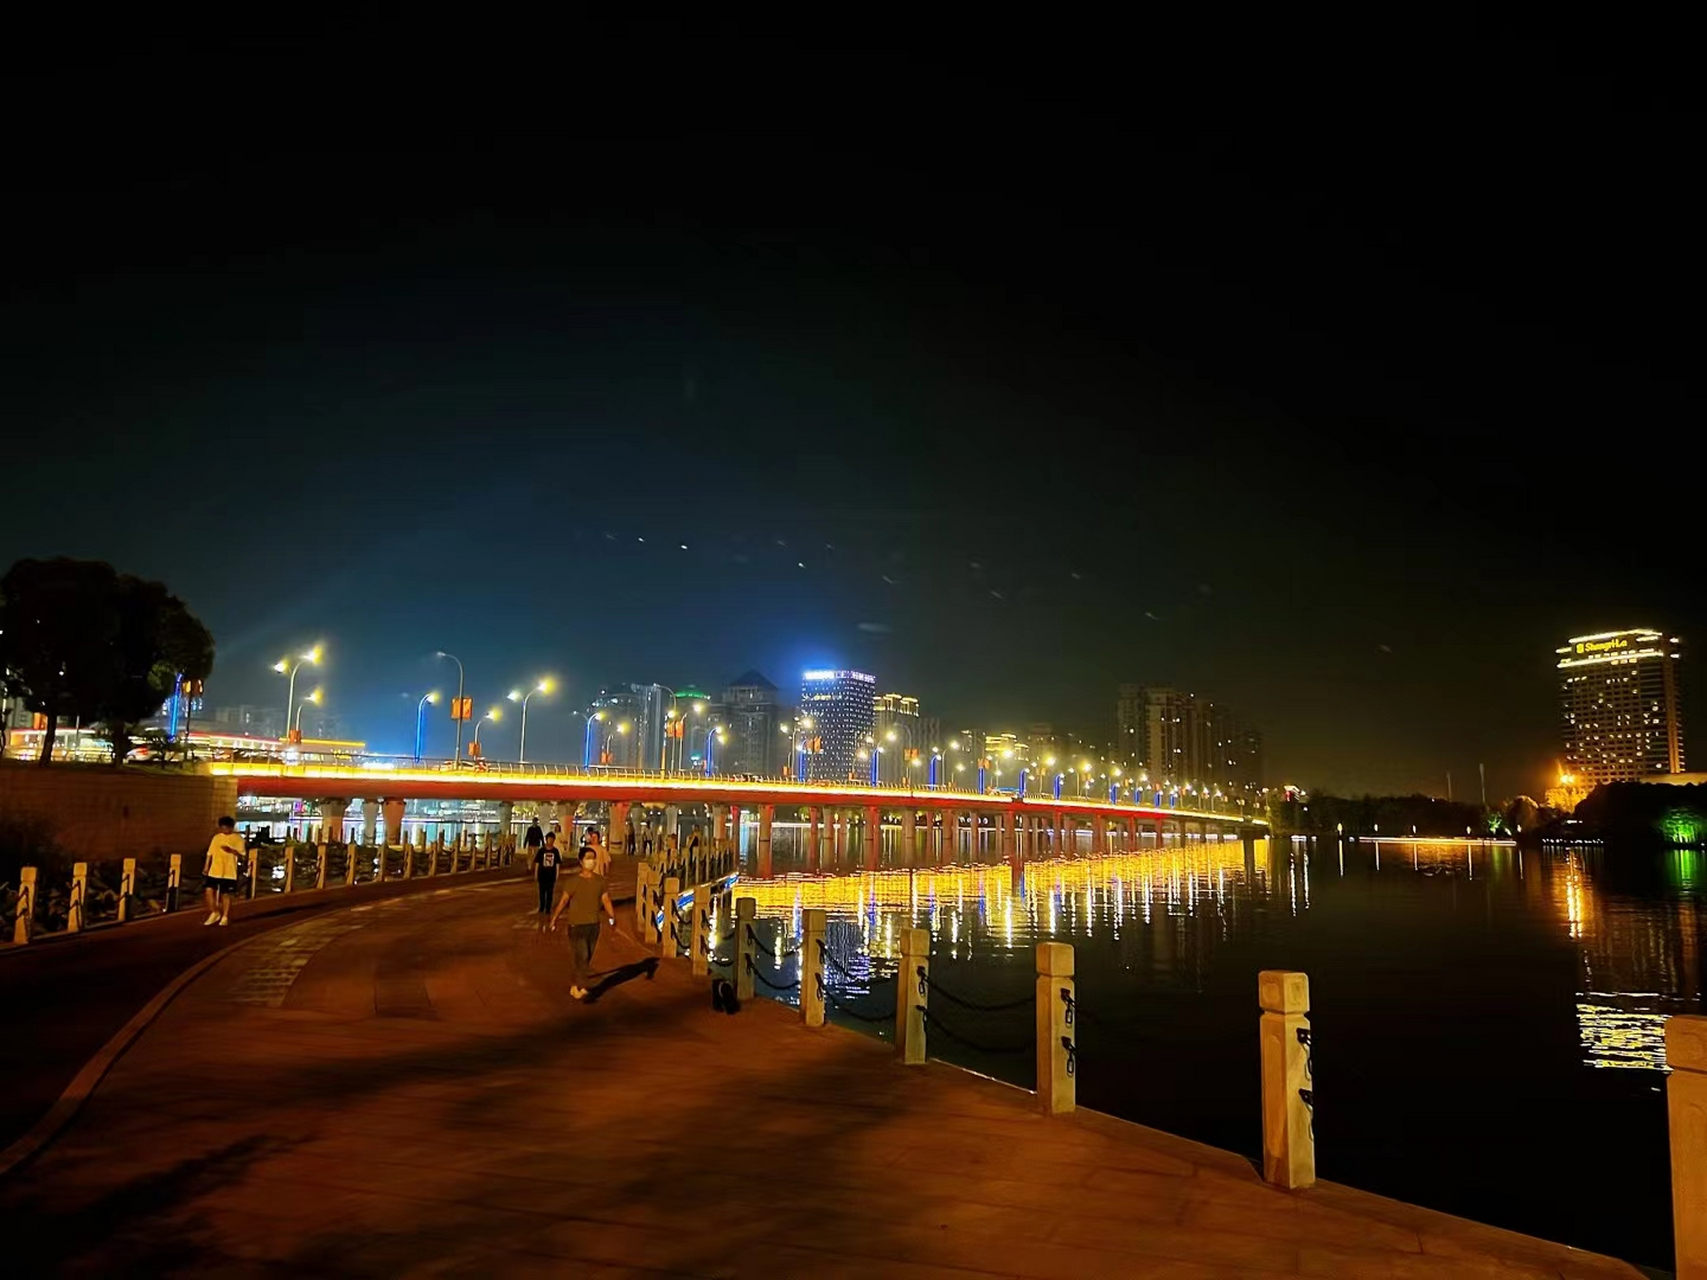 扬州明月湖介绍图片